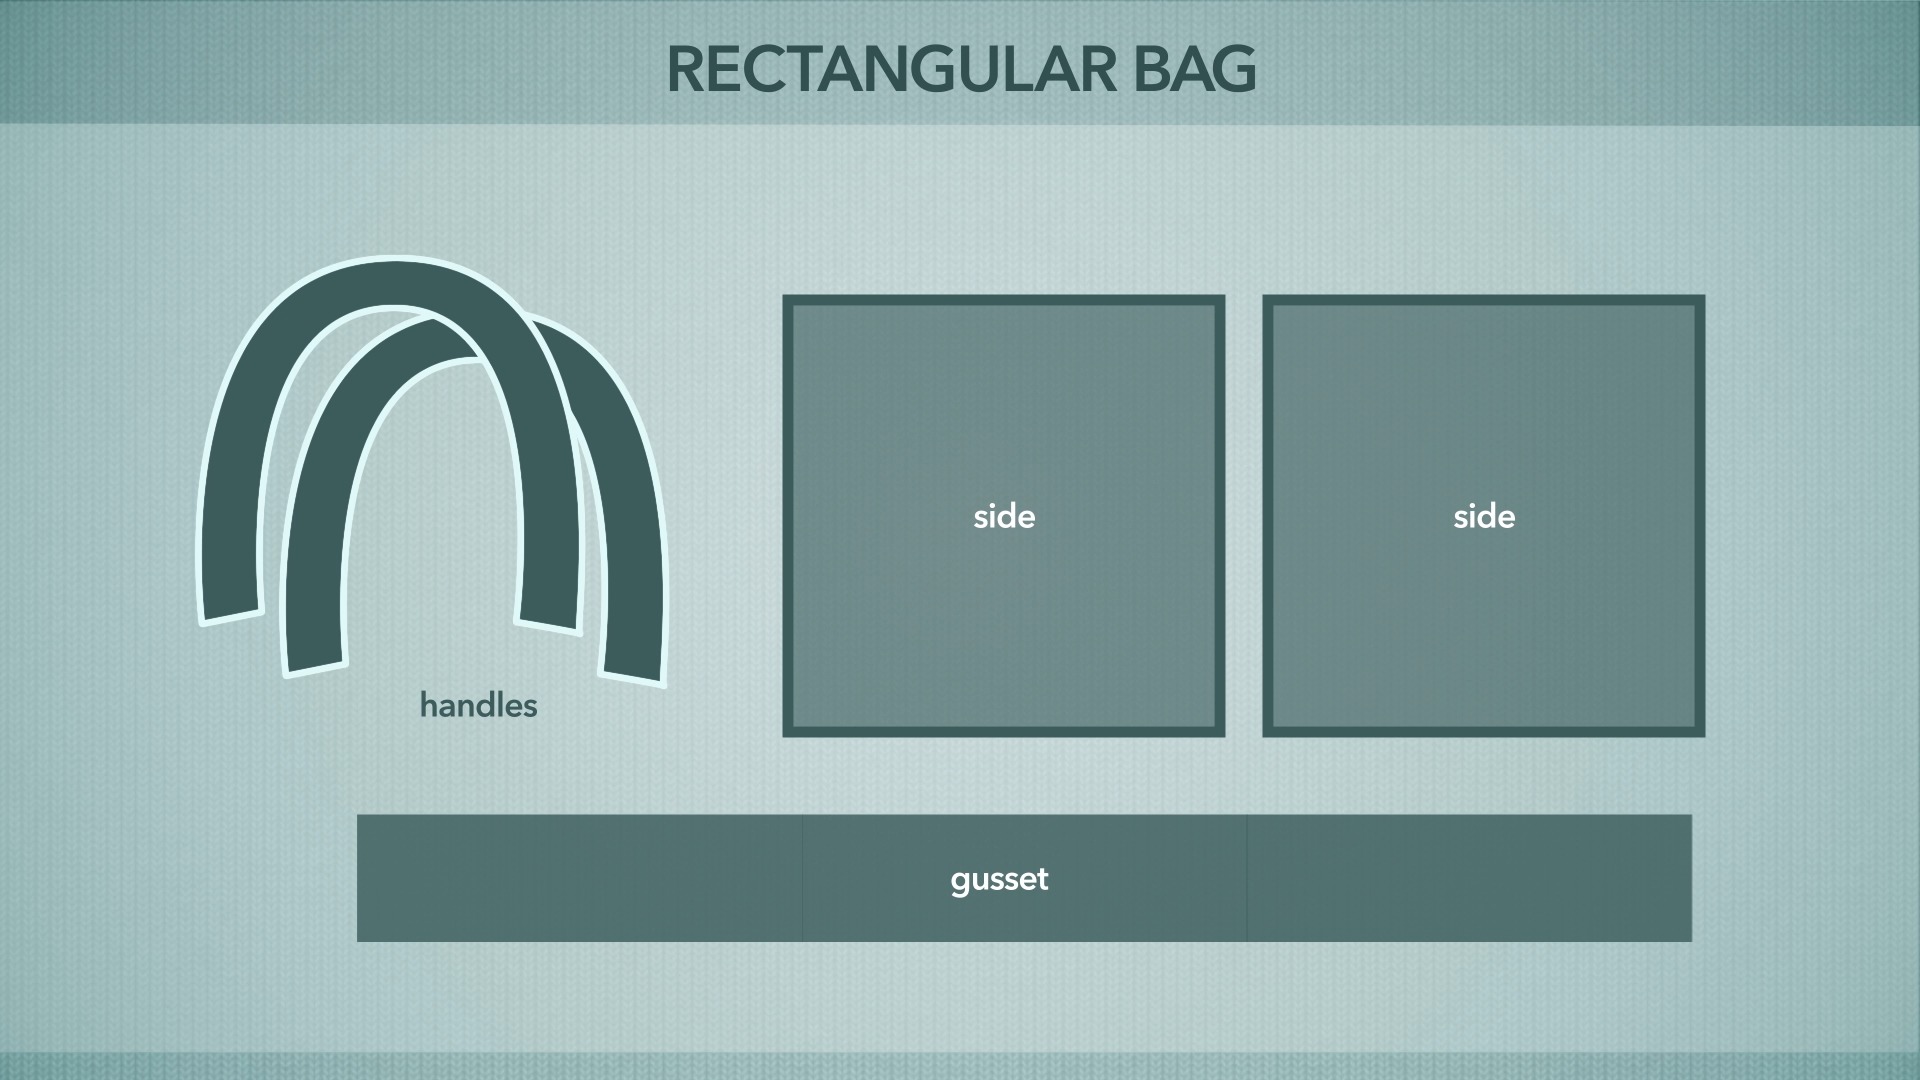 Session 4: Starting the Rectangular Bag